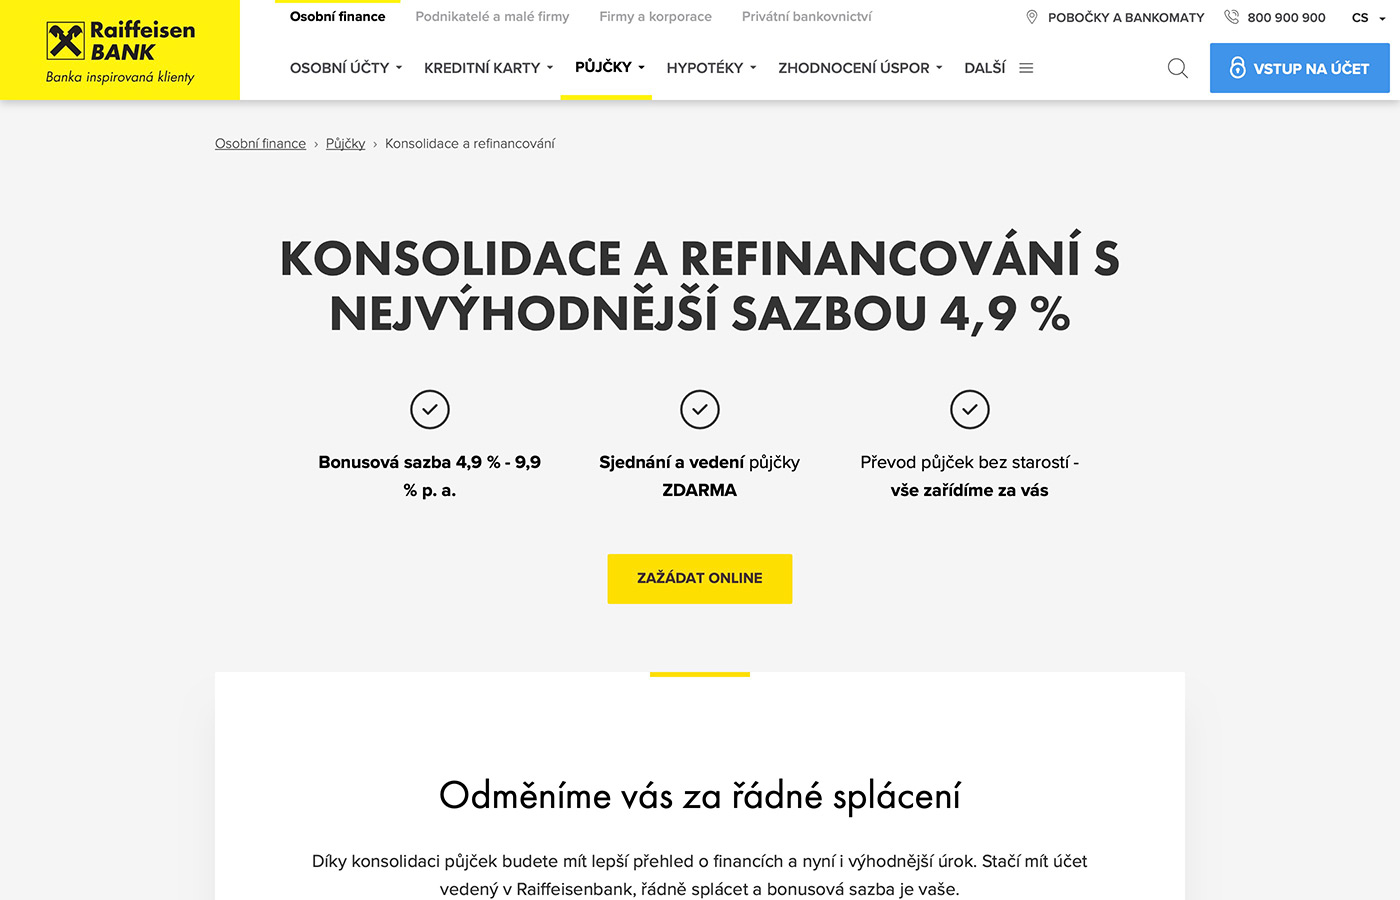 Náhled webových stránek www.rb.cz/osobni/pujcky/prevedeni-a-slouceni-pujcek